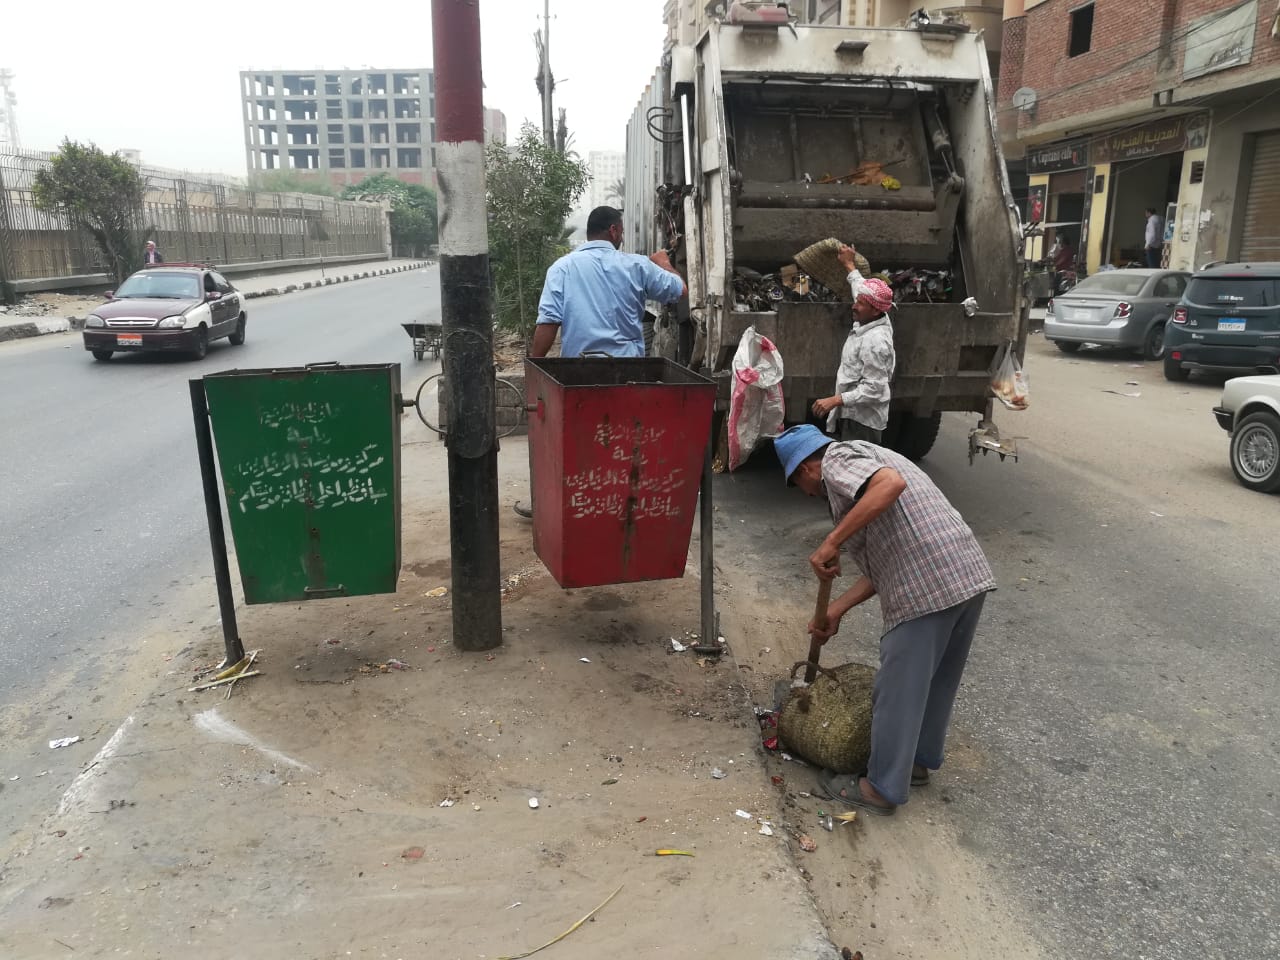 أكد مجلس الوزراء على ضرورة التخلص من القمامة في الشوارع خلال فترة الحظر